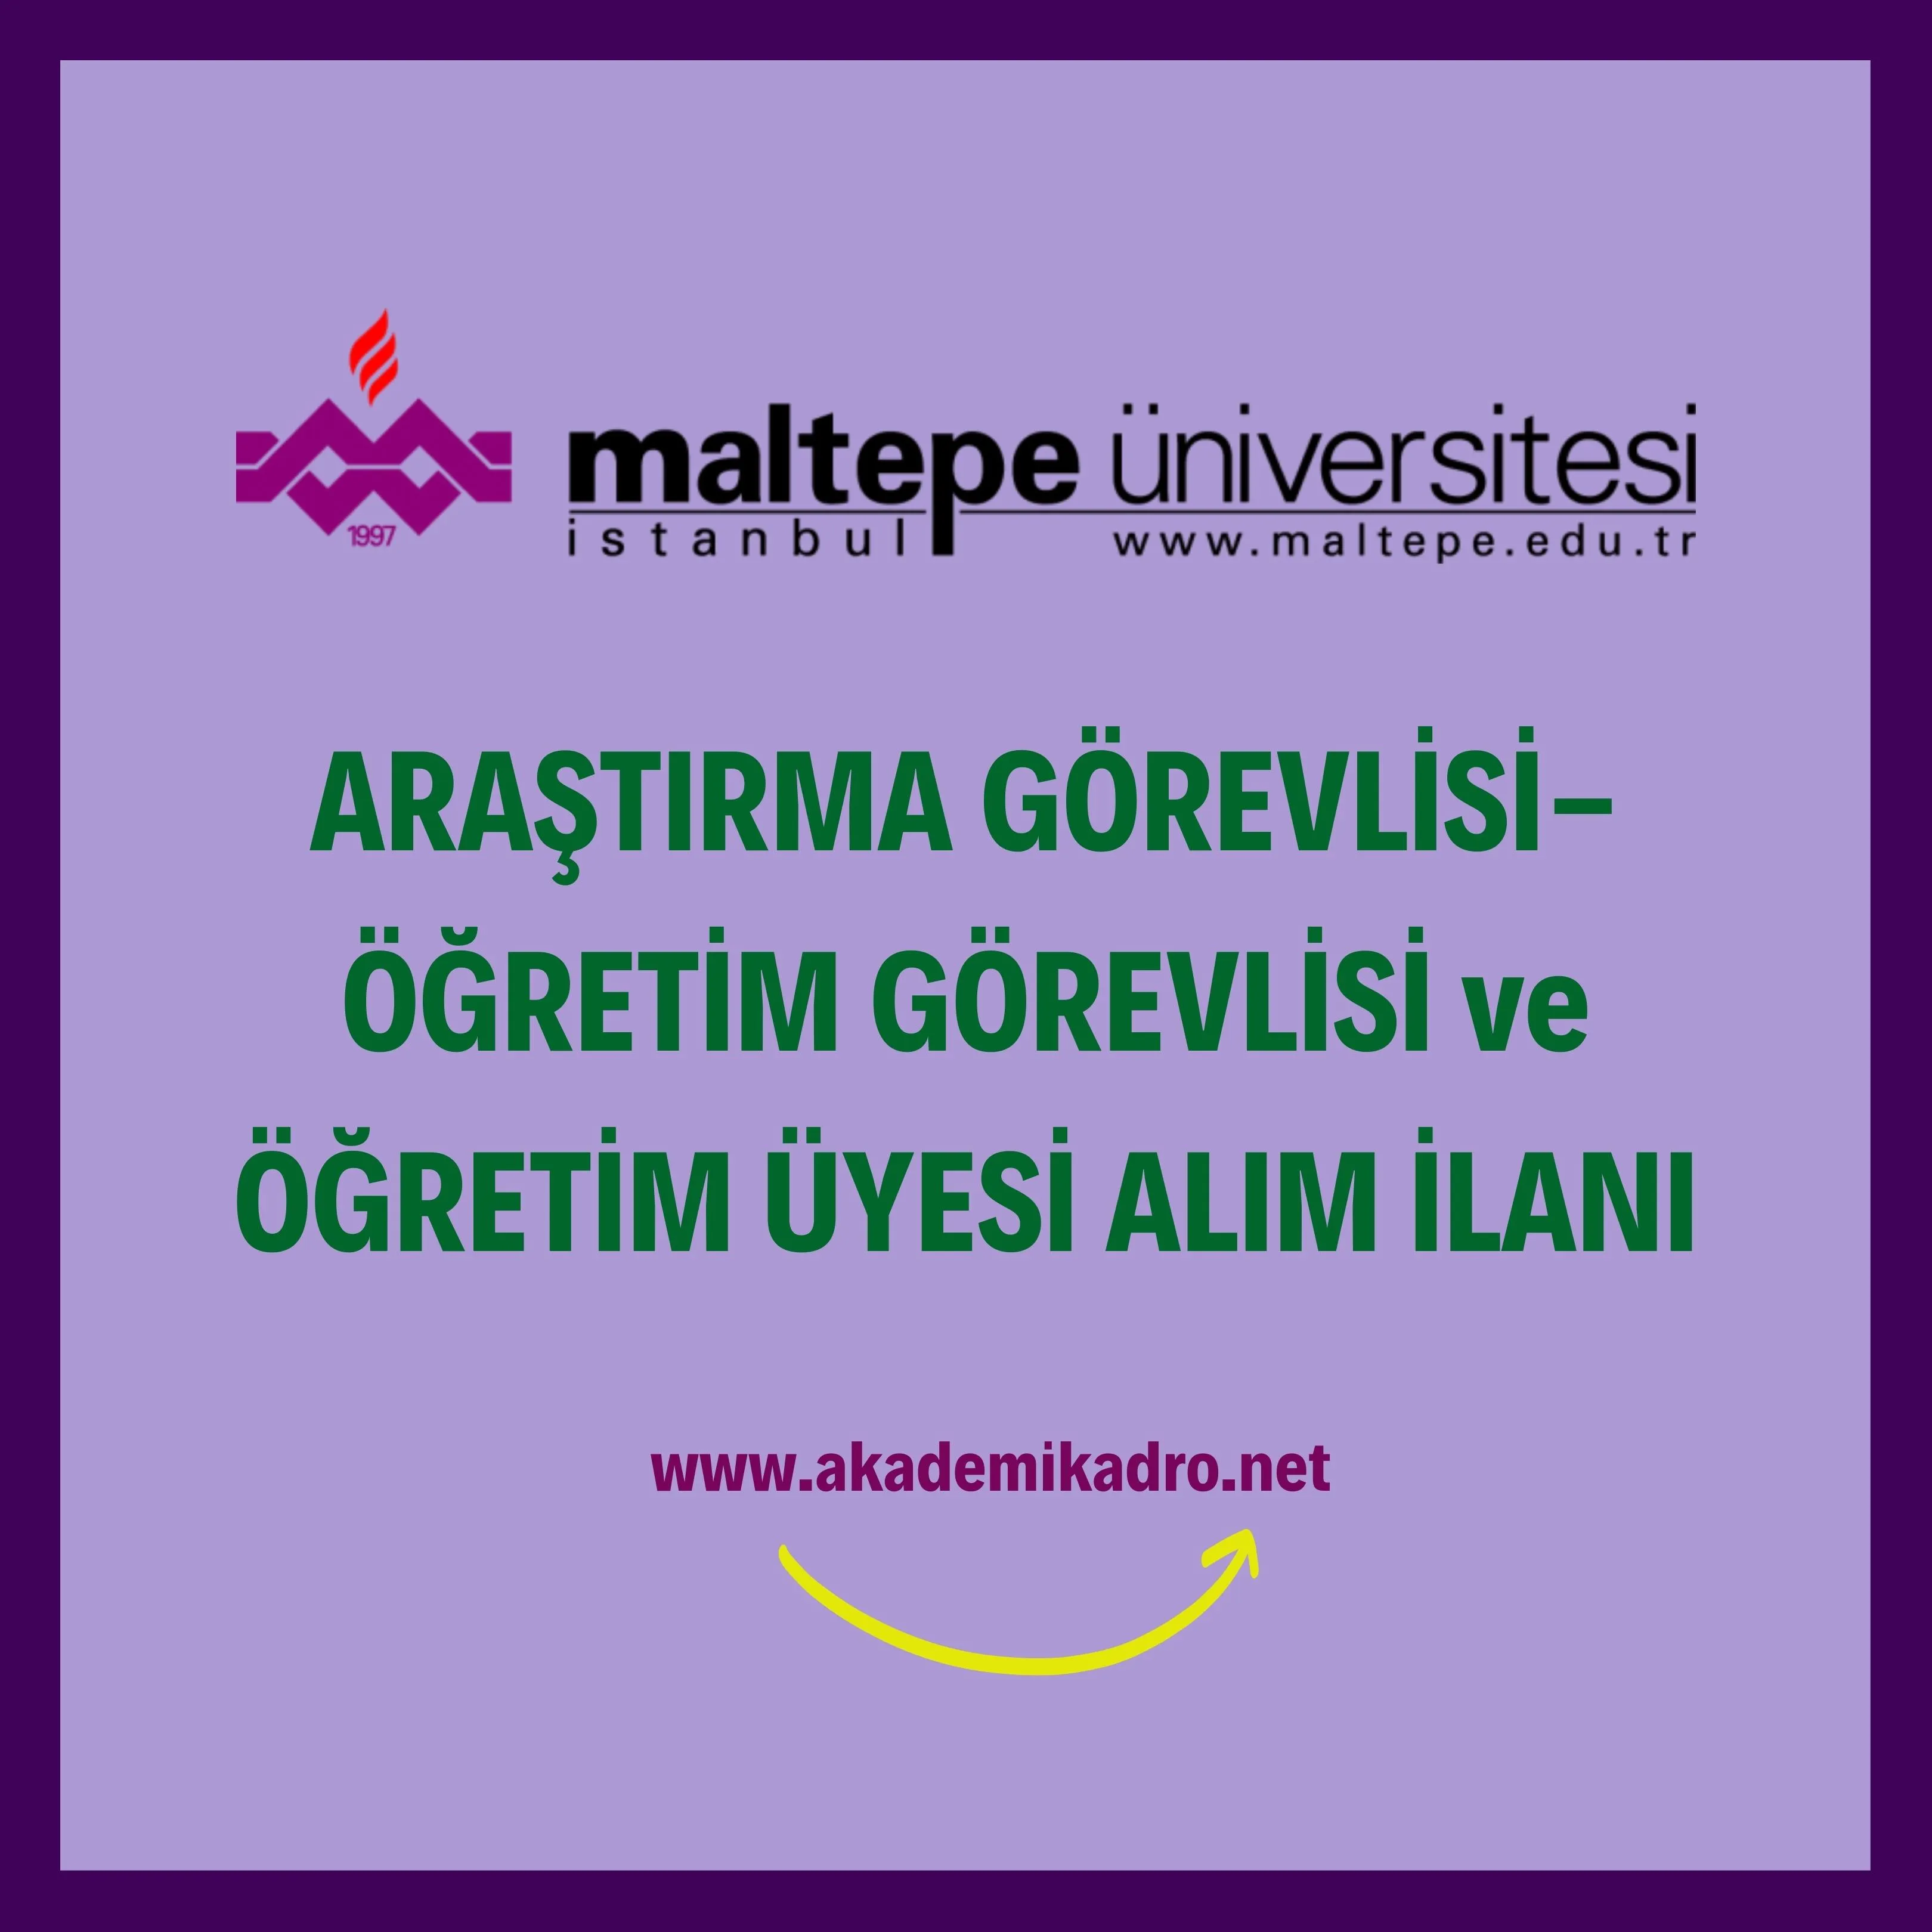 Maltepe Üniversitesi Öğretim görevlisi, 7 Araştırma görevlisi ve 32 Öğretim üyesi alacak.